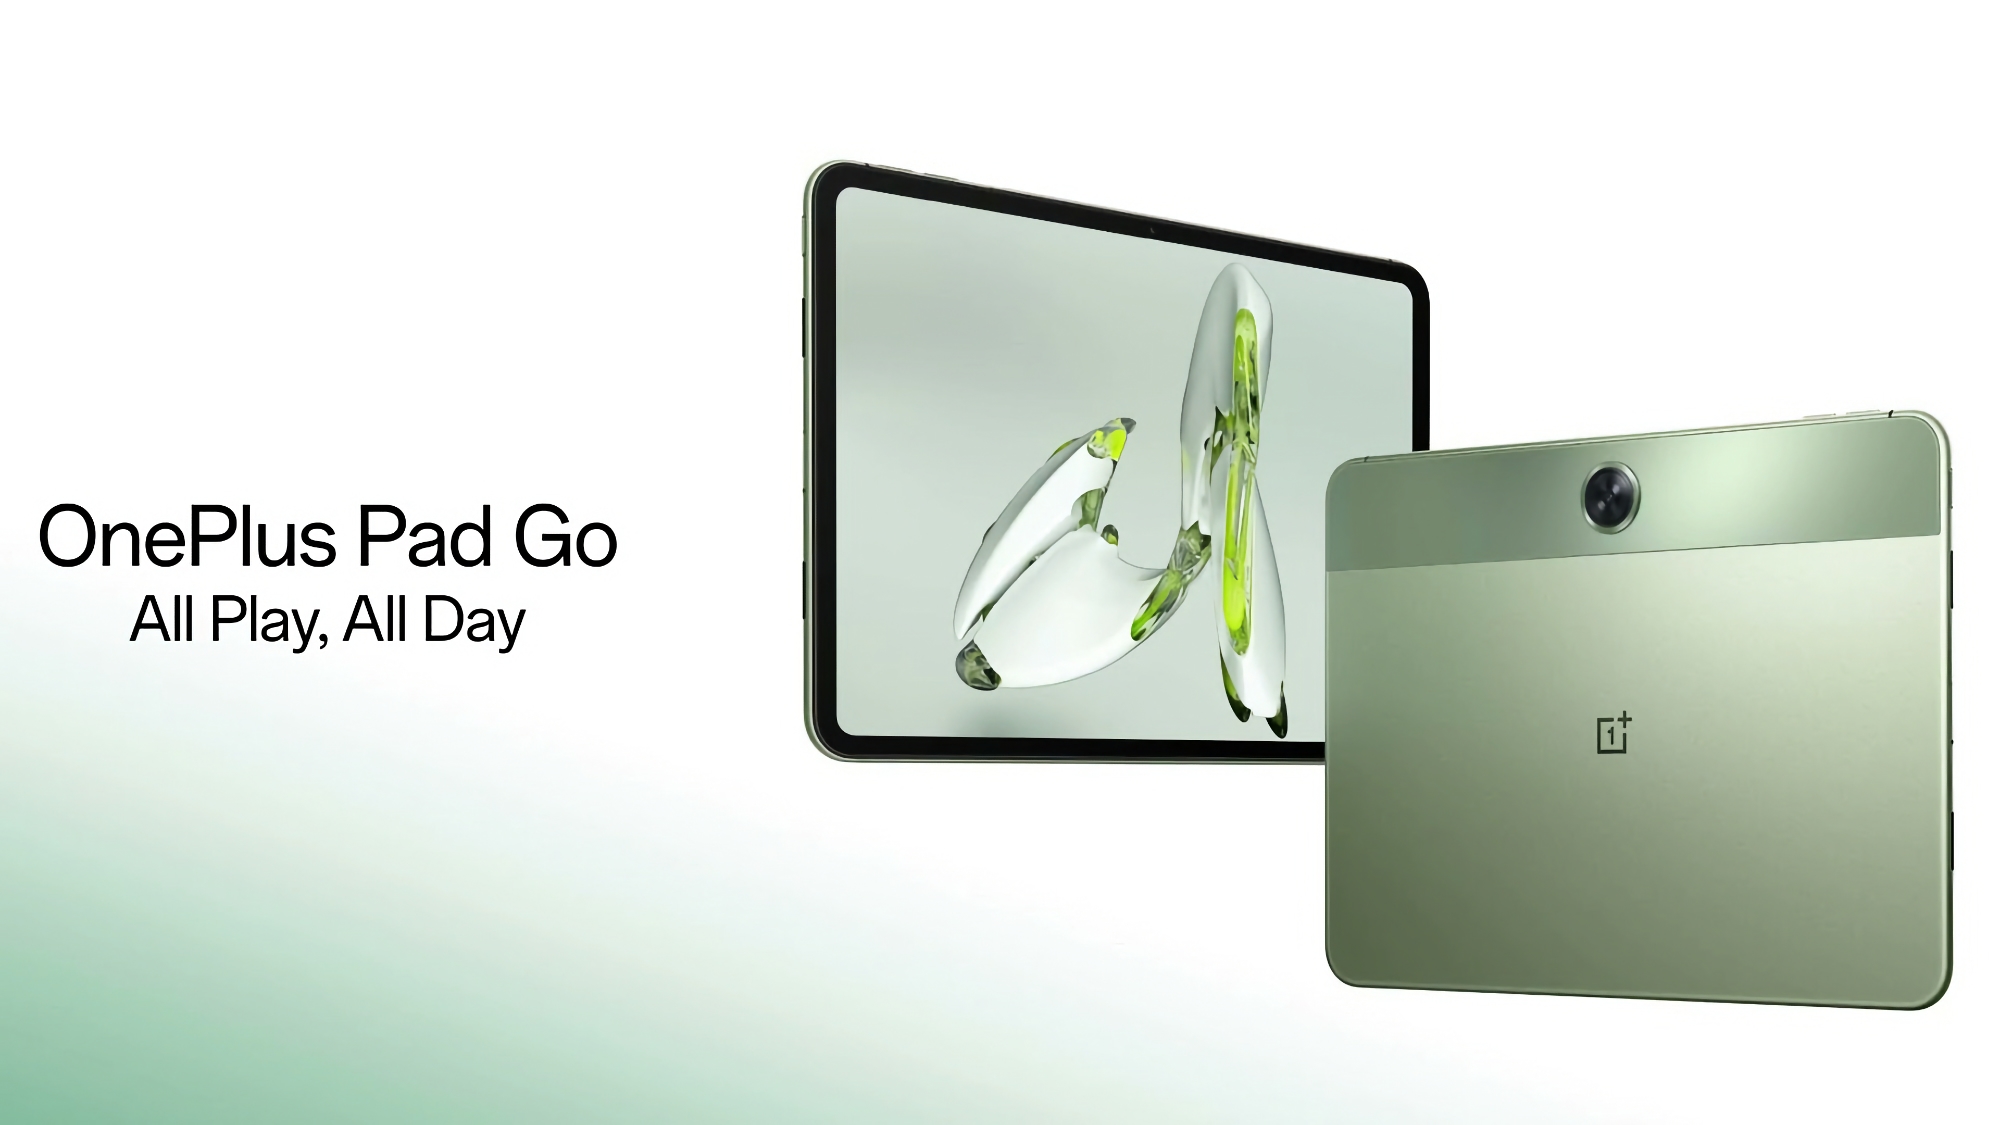 OnePlus Pad Go debuteert in Europa: een tablet met een 2K-scherm met 90Hz, MediaTek Helio G99-chip, LTE en een prijs van €299